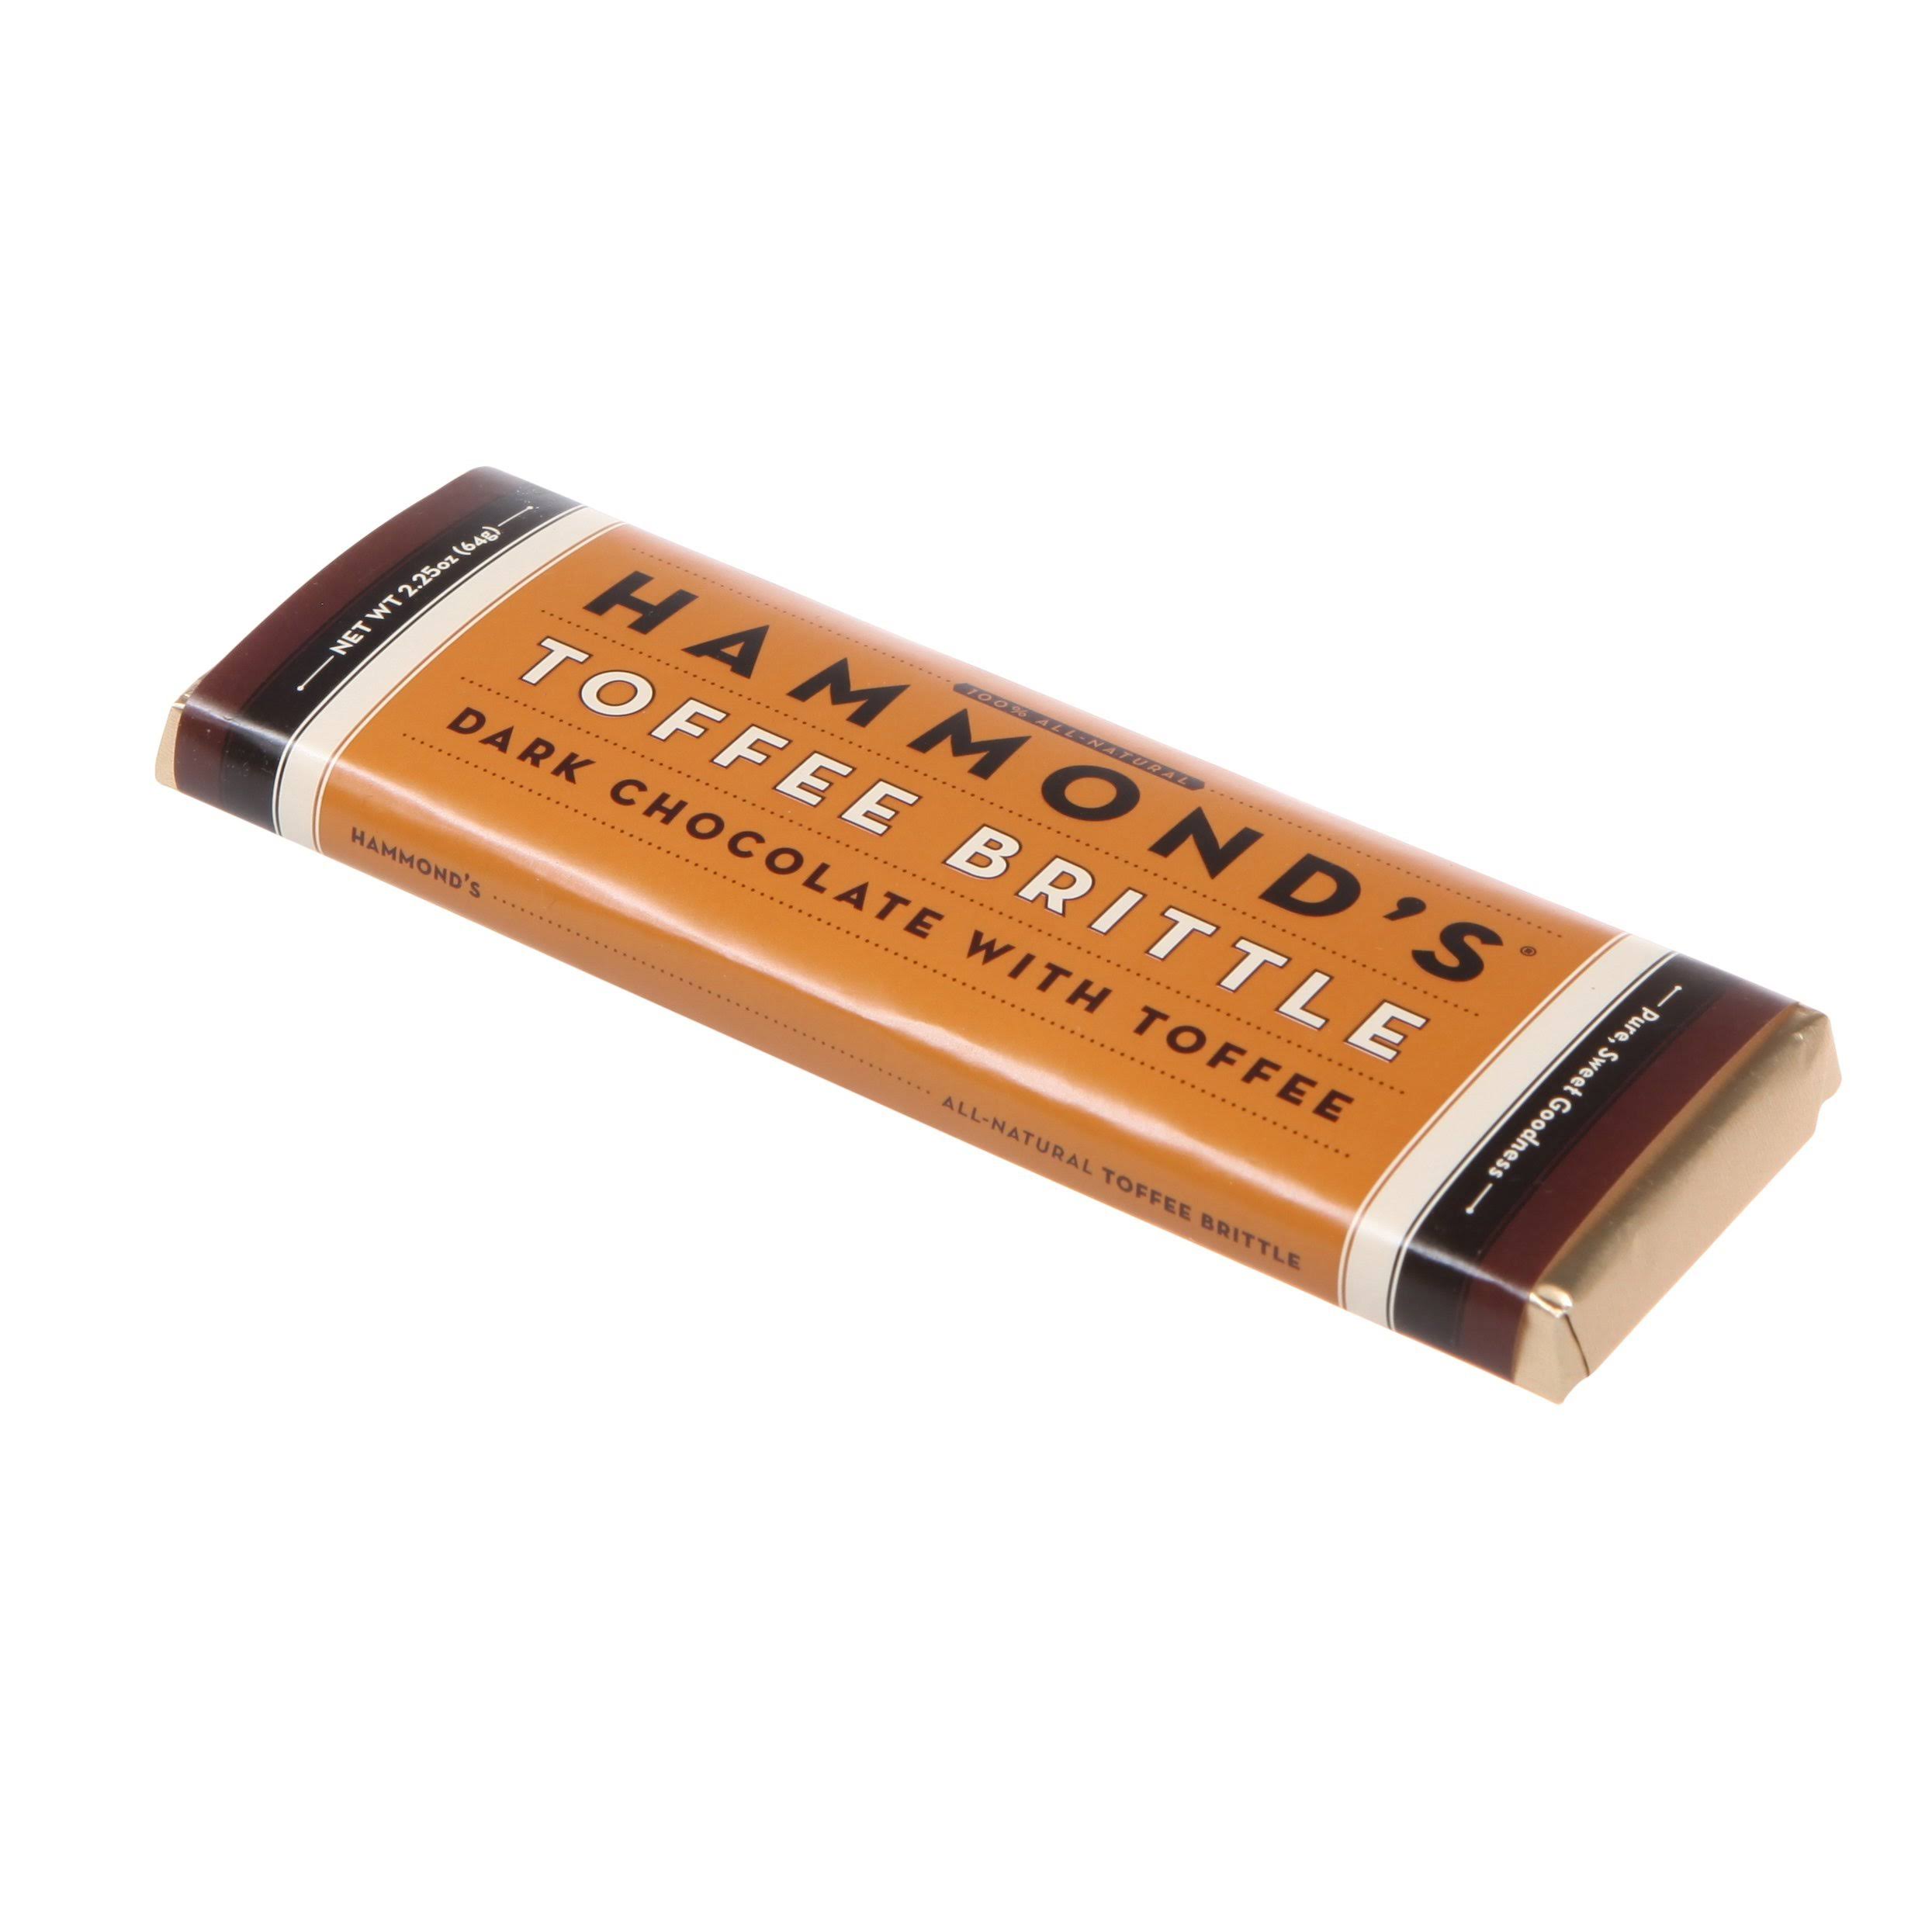 Hammond's Candies Chocolate Bar - Toffee Brittle, 2oz